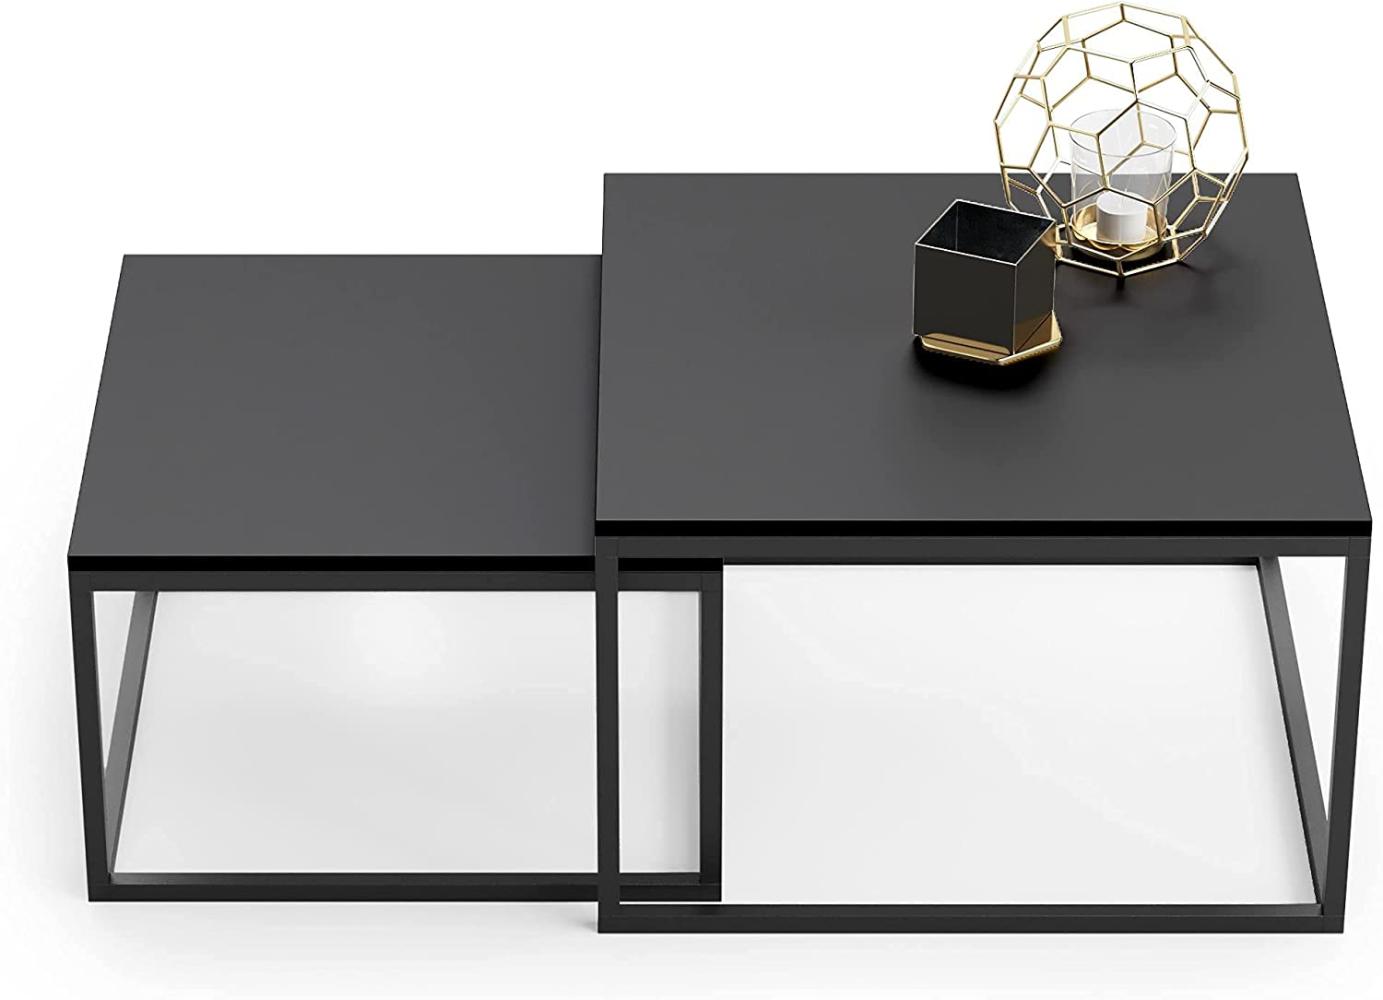 Couchtisch 2er Set schwarz 42cm und 36cm hoch, Beistelltisch Loft Design, 2 in 1 Verschachtelung, kratzfeste Oberfläche, Wohnzimmer Bild 1